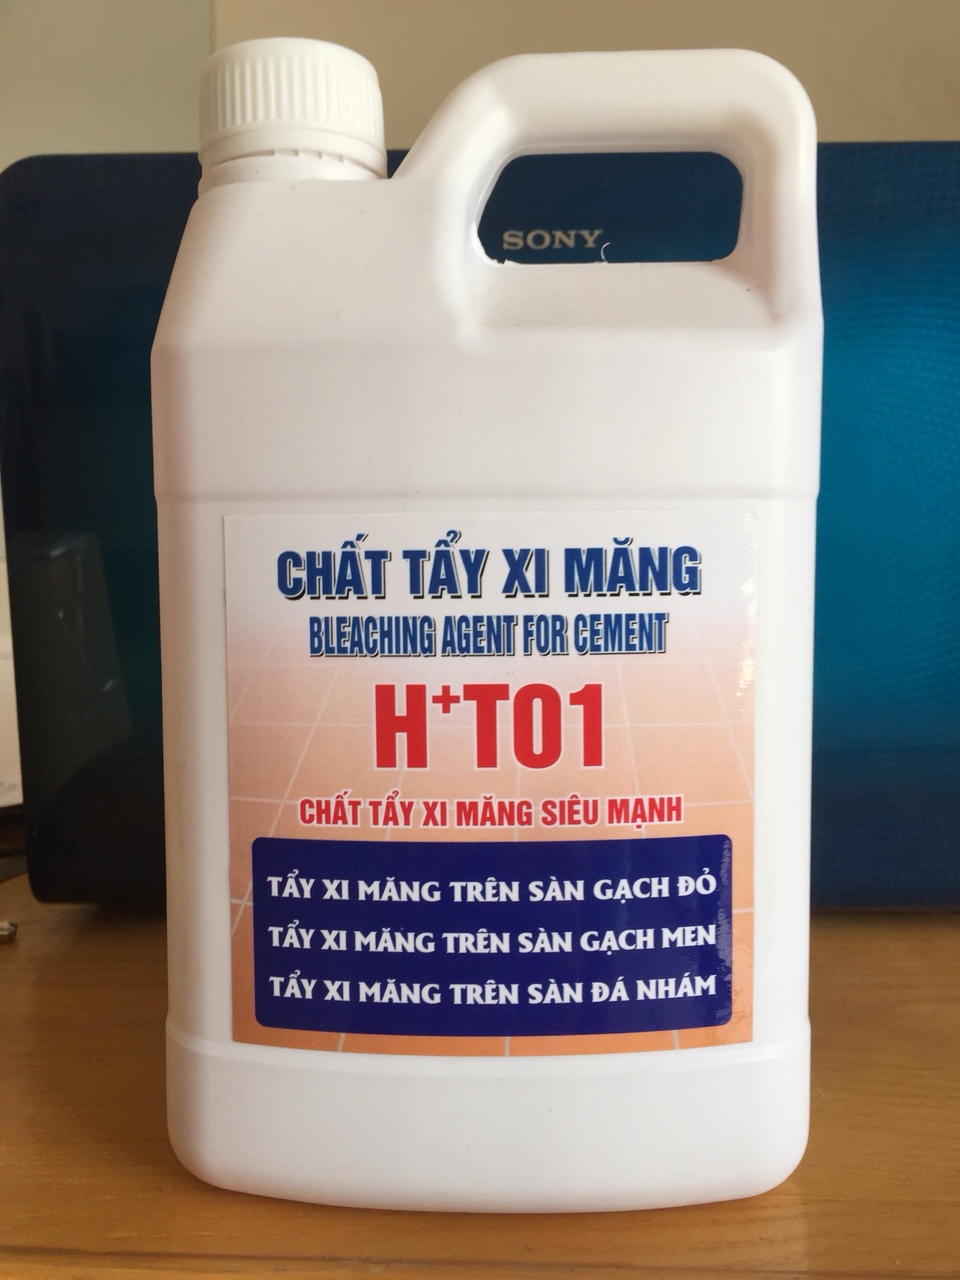 Nhận diện nước tẩy xi măng HT01 chính hãng chất lượng.